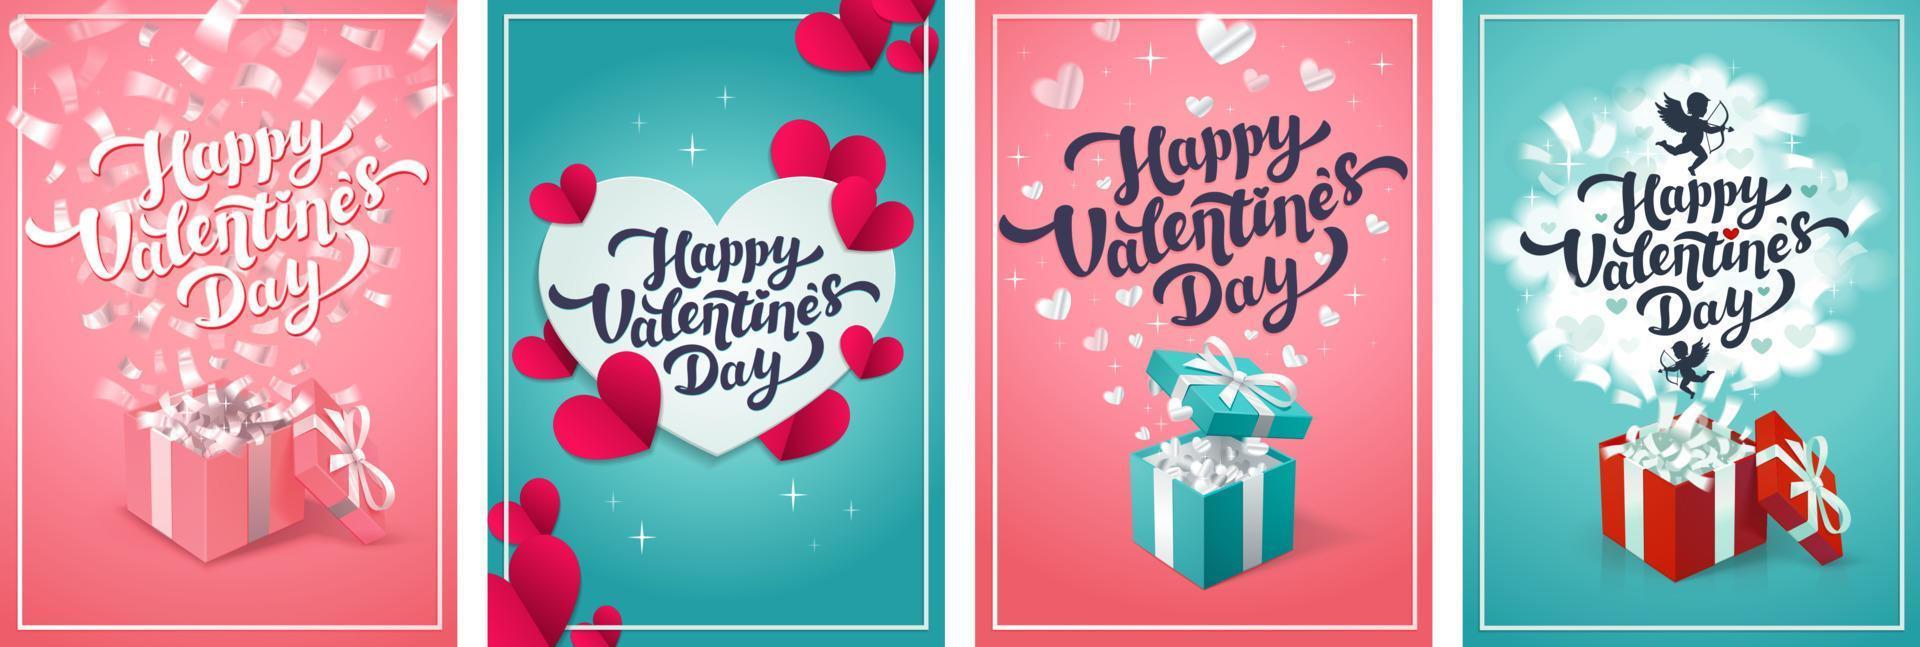 tarjetas de felicitación del día de san valentín - conjunto de tarjetas o carteles vectoriales del día del amor. ilustración vectorial vector